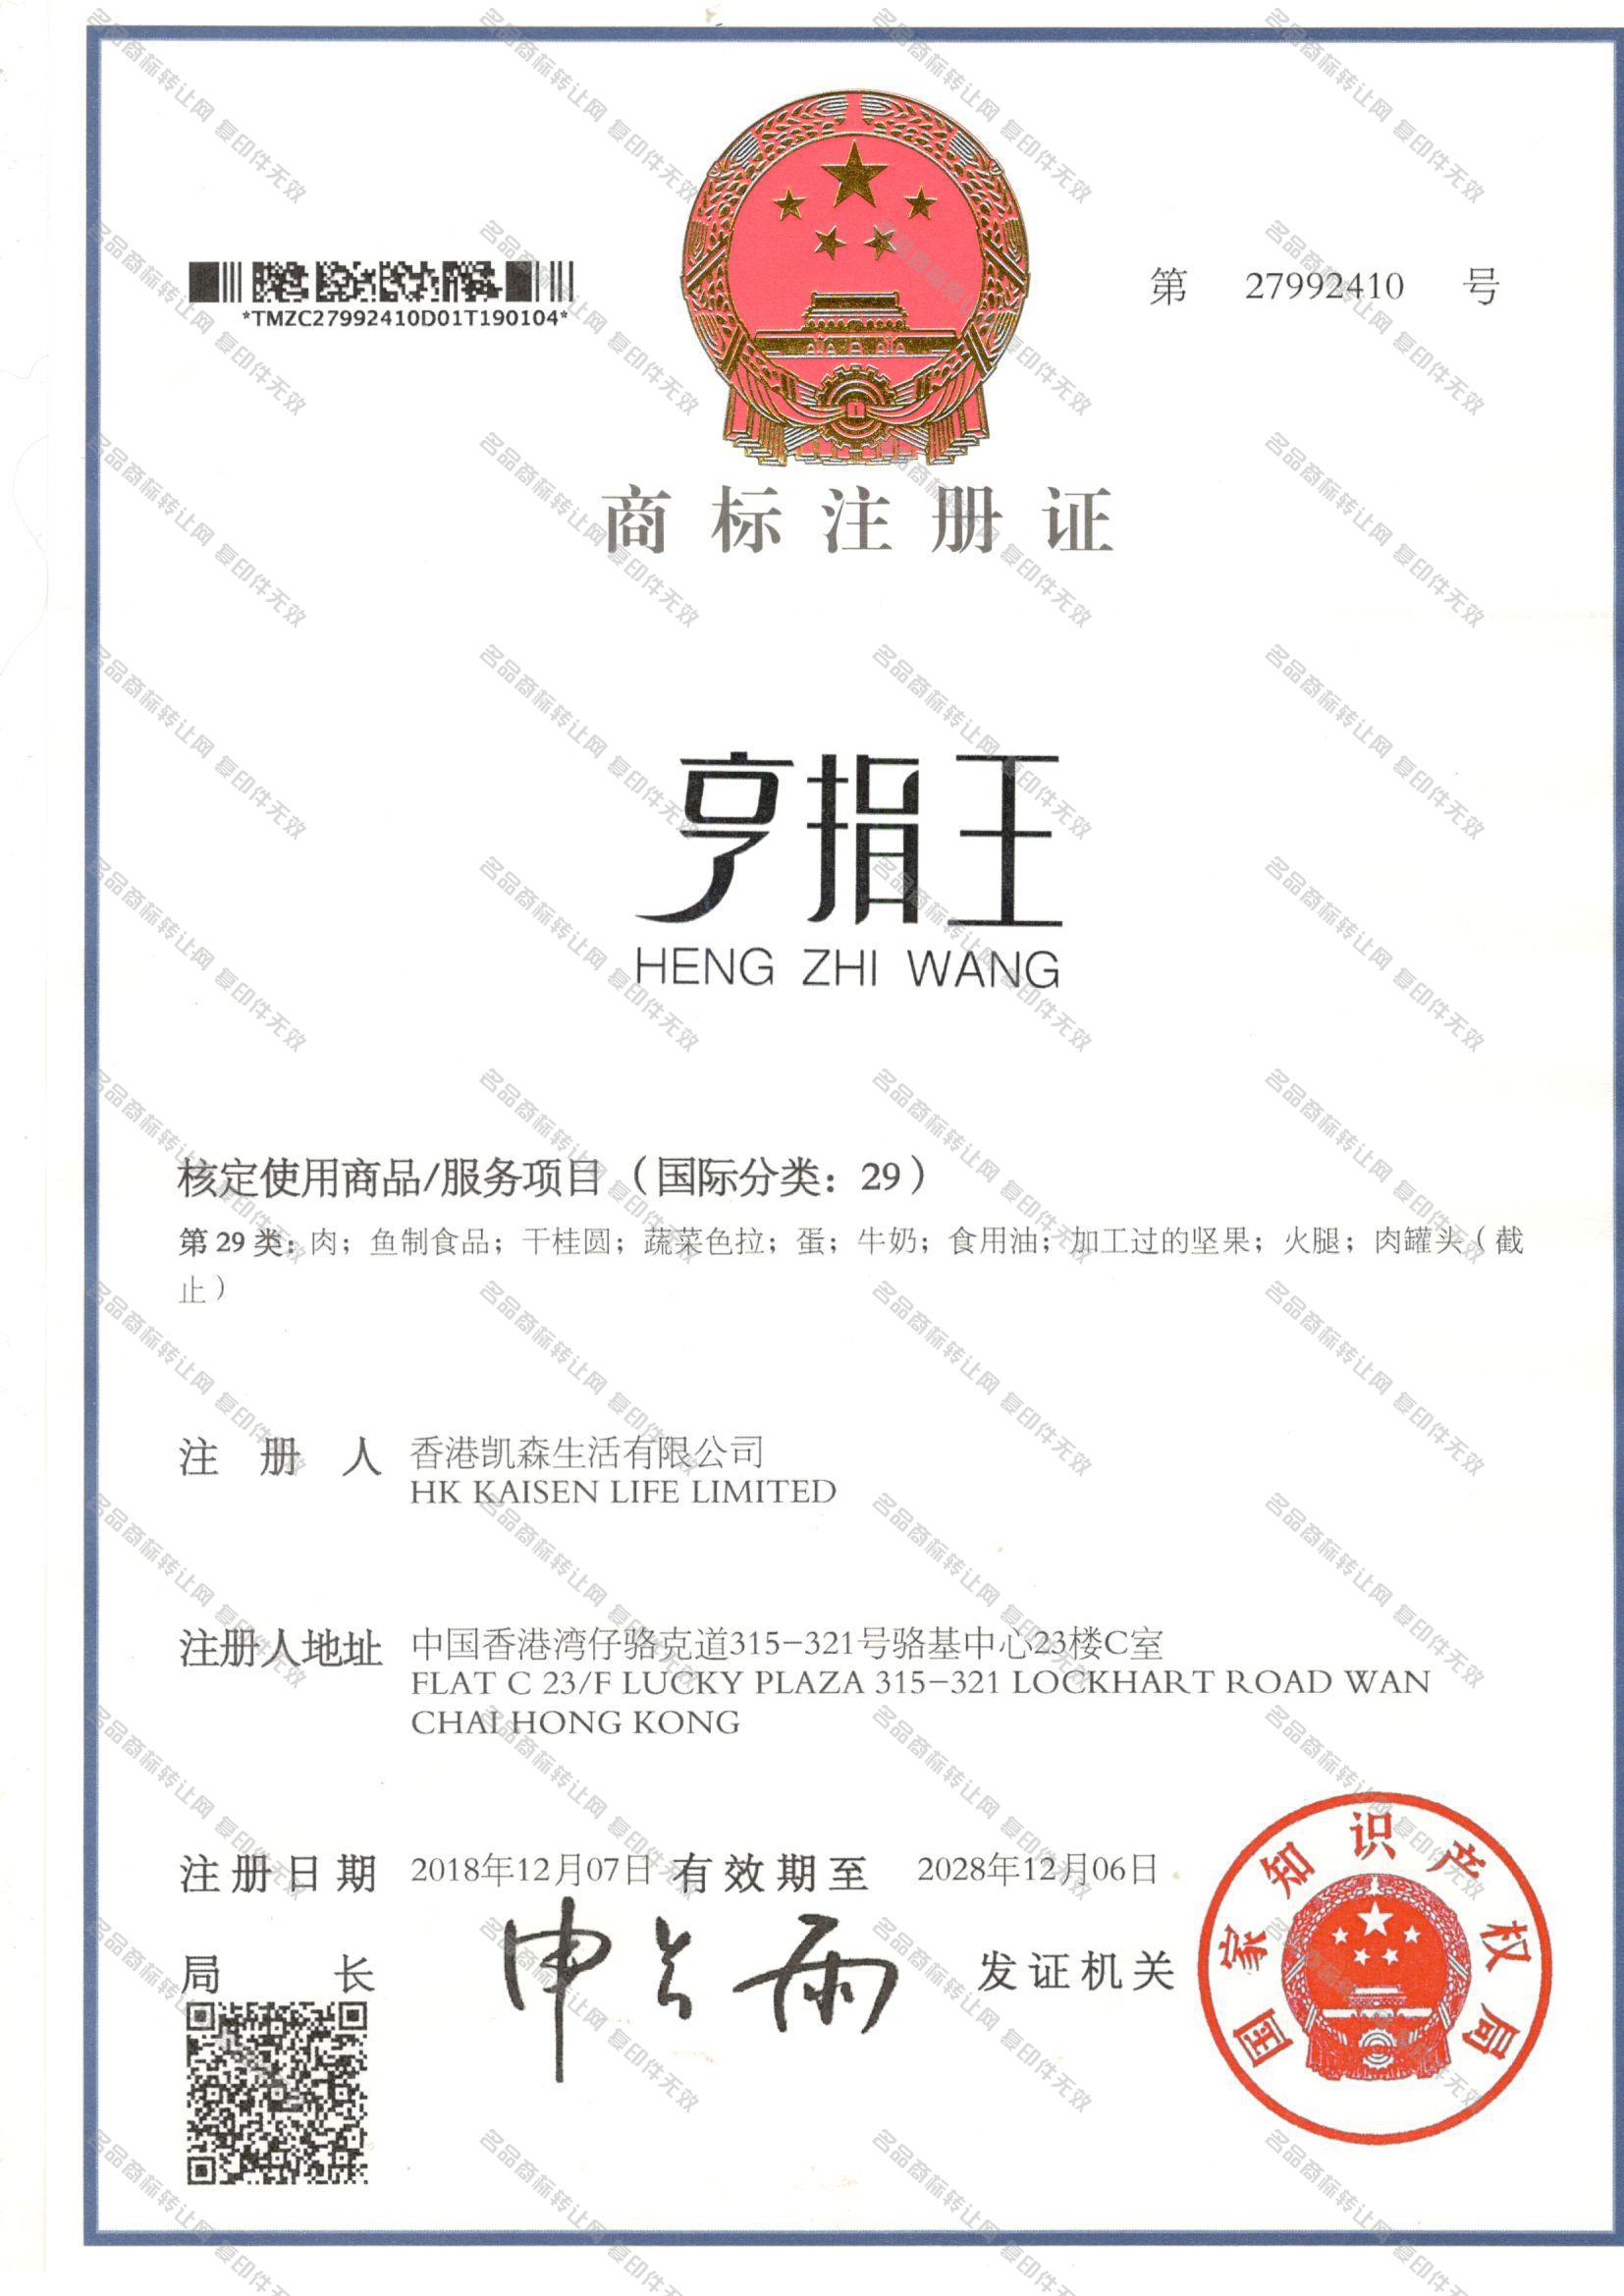 亨指王 HENGZHIWANG注册证